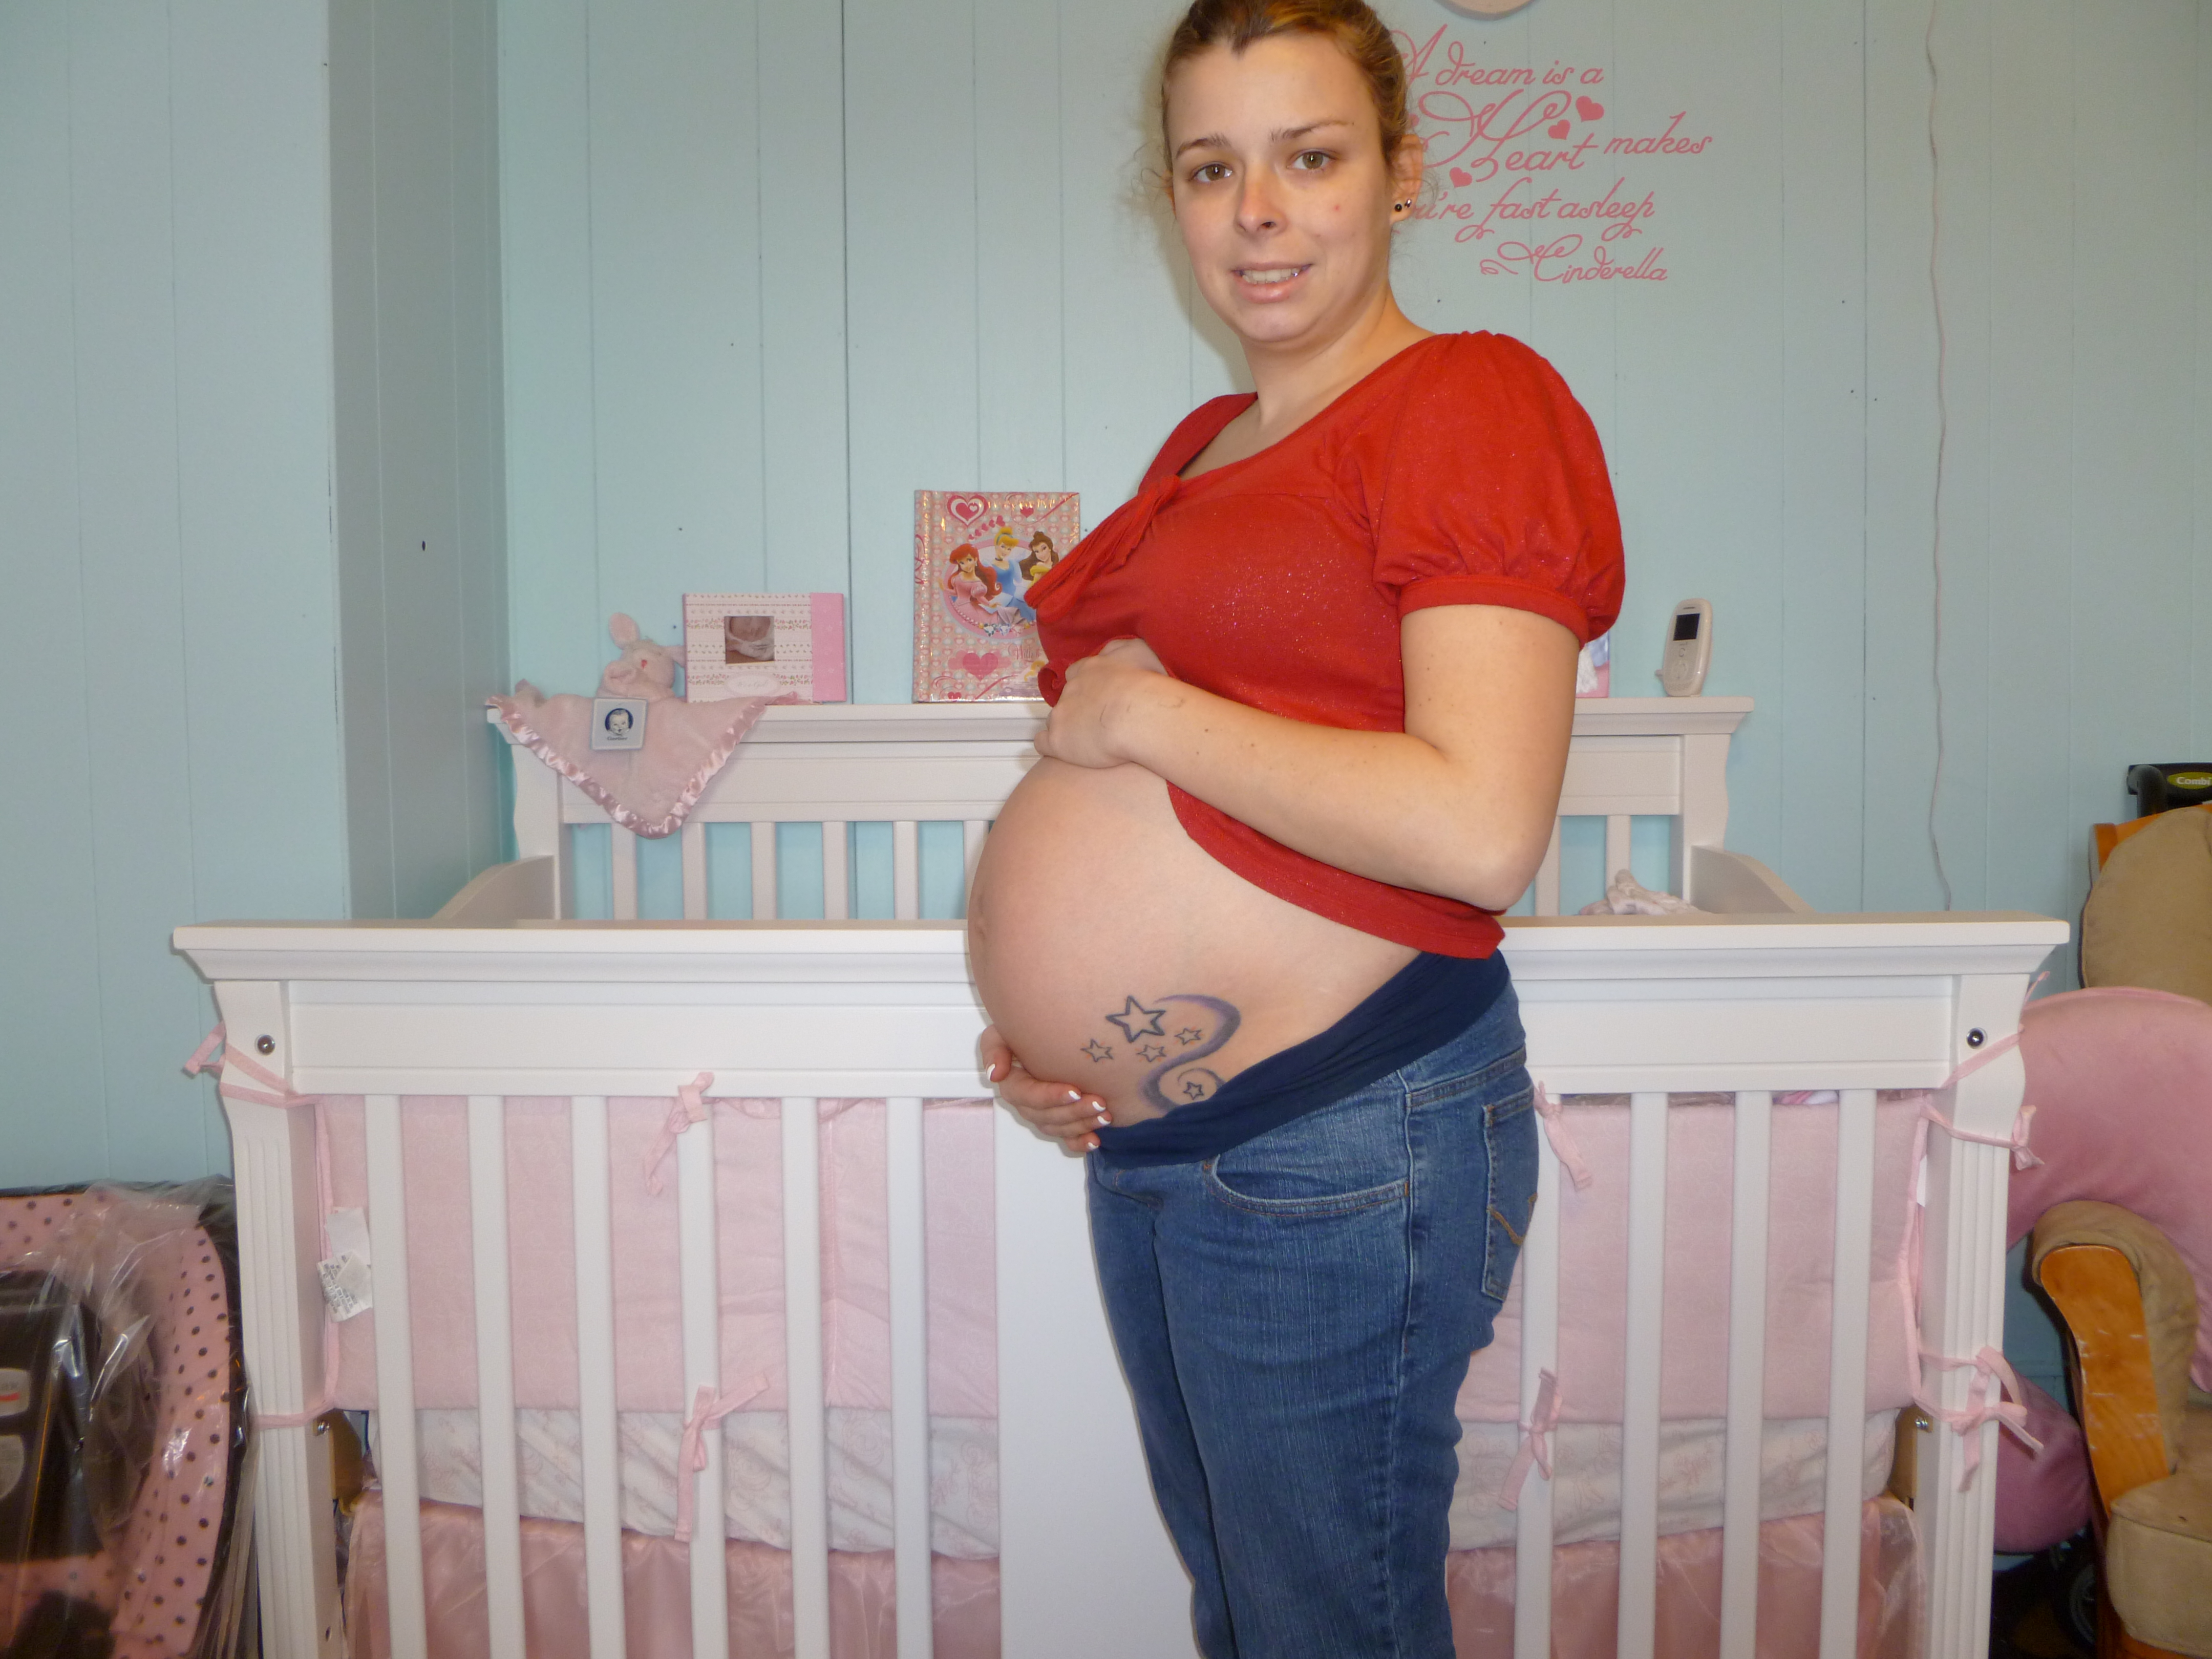 33 недели беременности можно. Живот на 33 неделе беременности. Женщины беременные двойней. Животы беременных двойней.